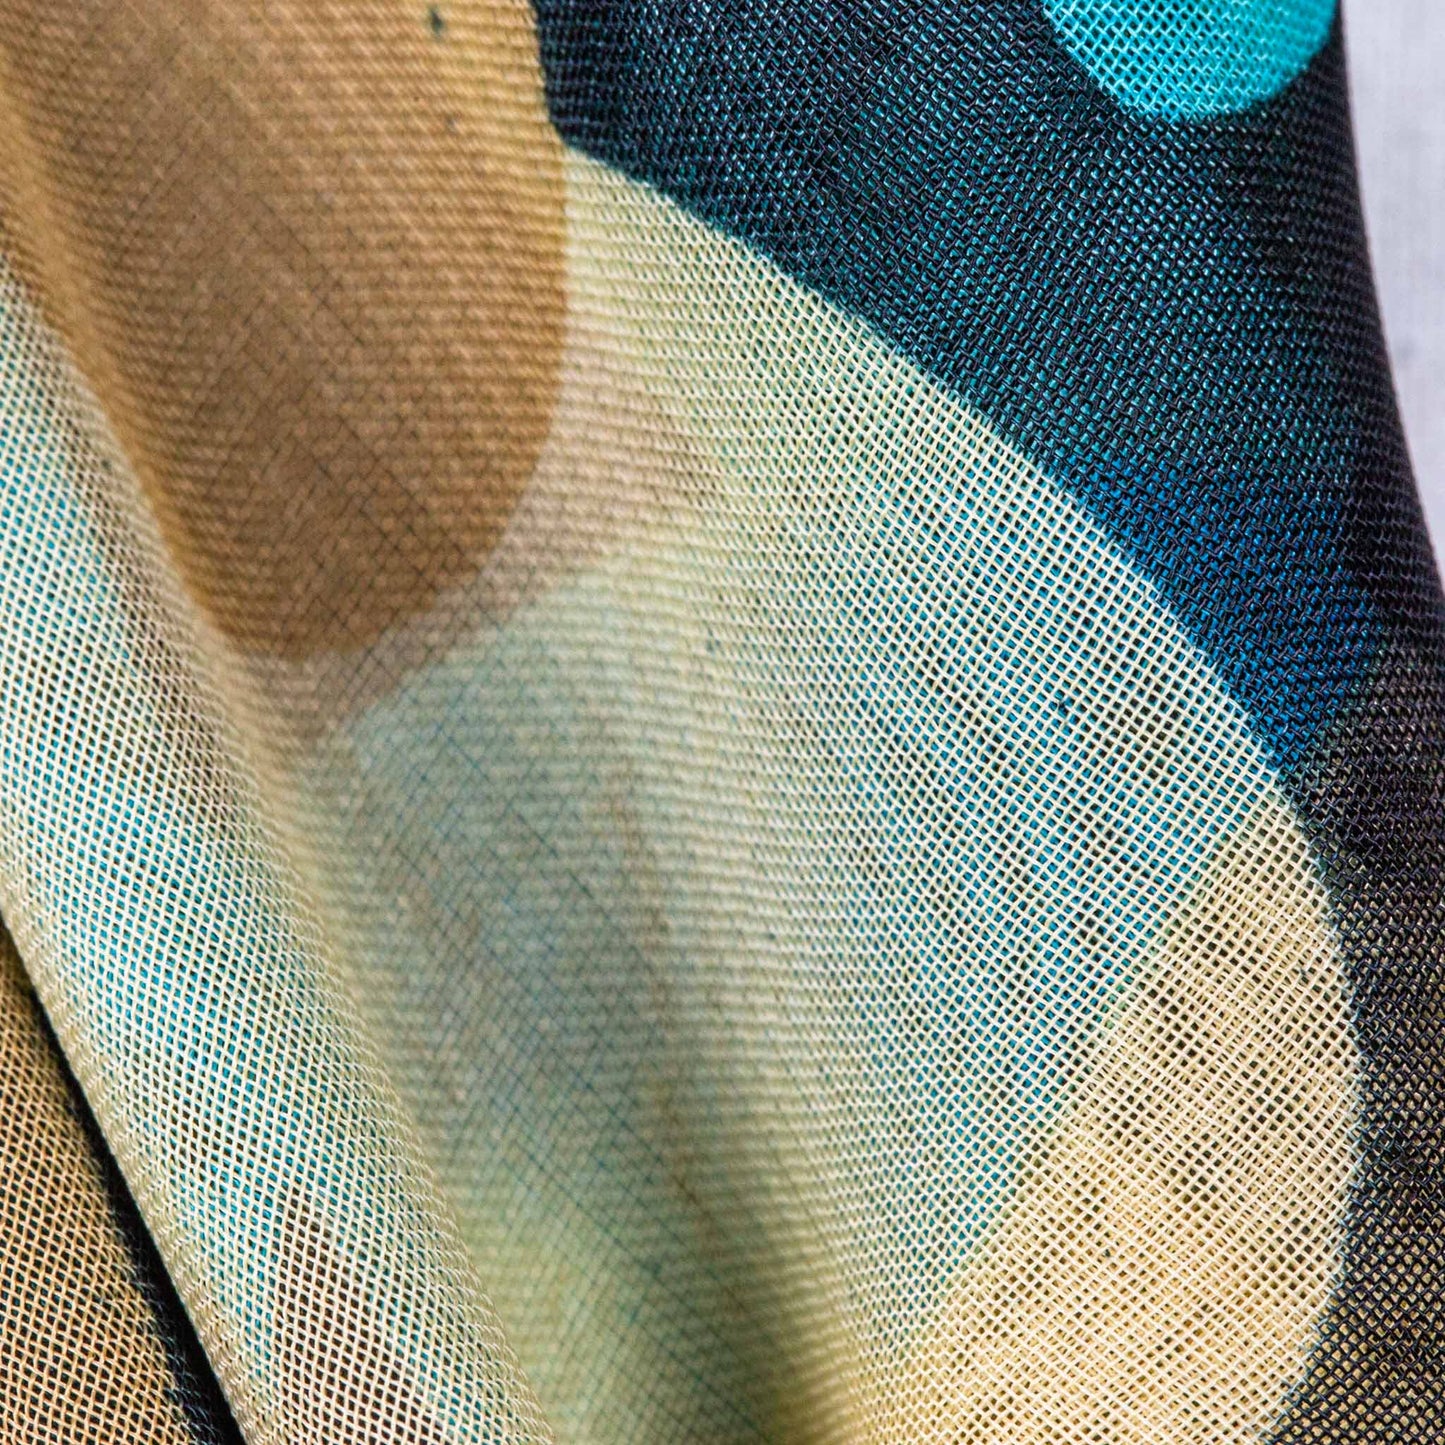 Eșarfă damă din mătase , imprimeu cu fluturi, 65 x 65 cm - Negru, Bej, Albastru